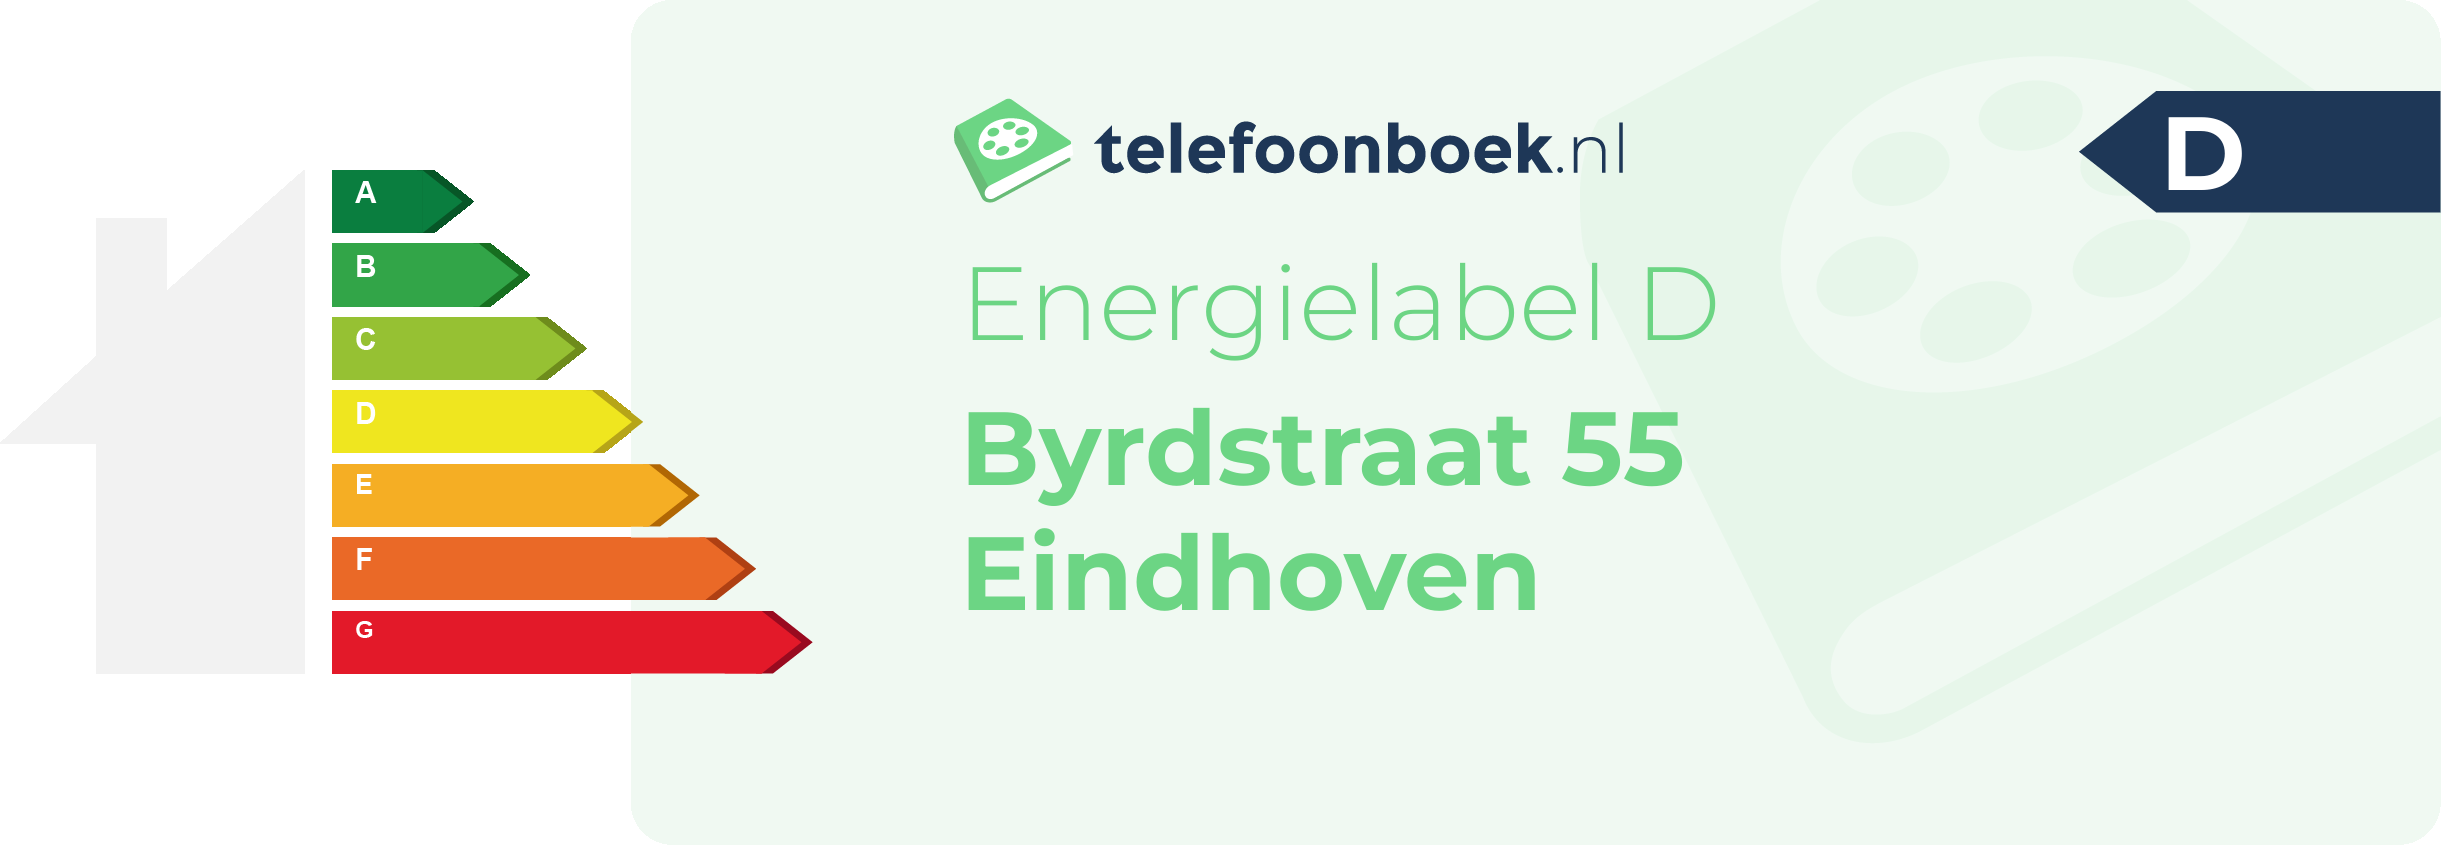 Energielabel Byrdstraat 55 Eindhoven